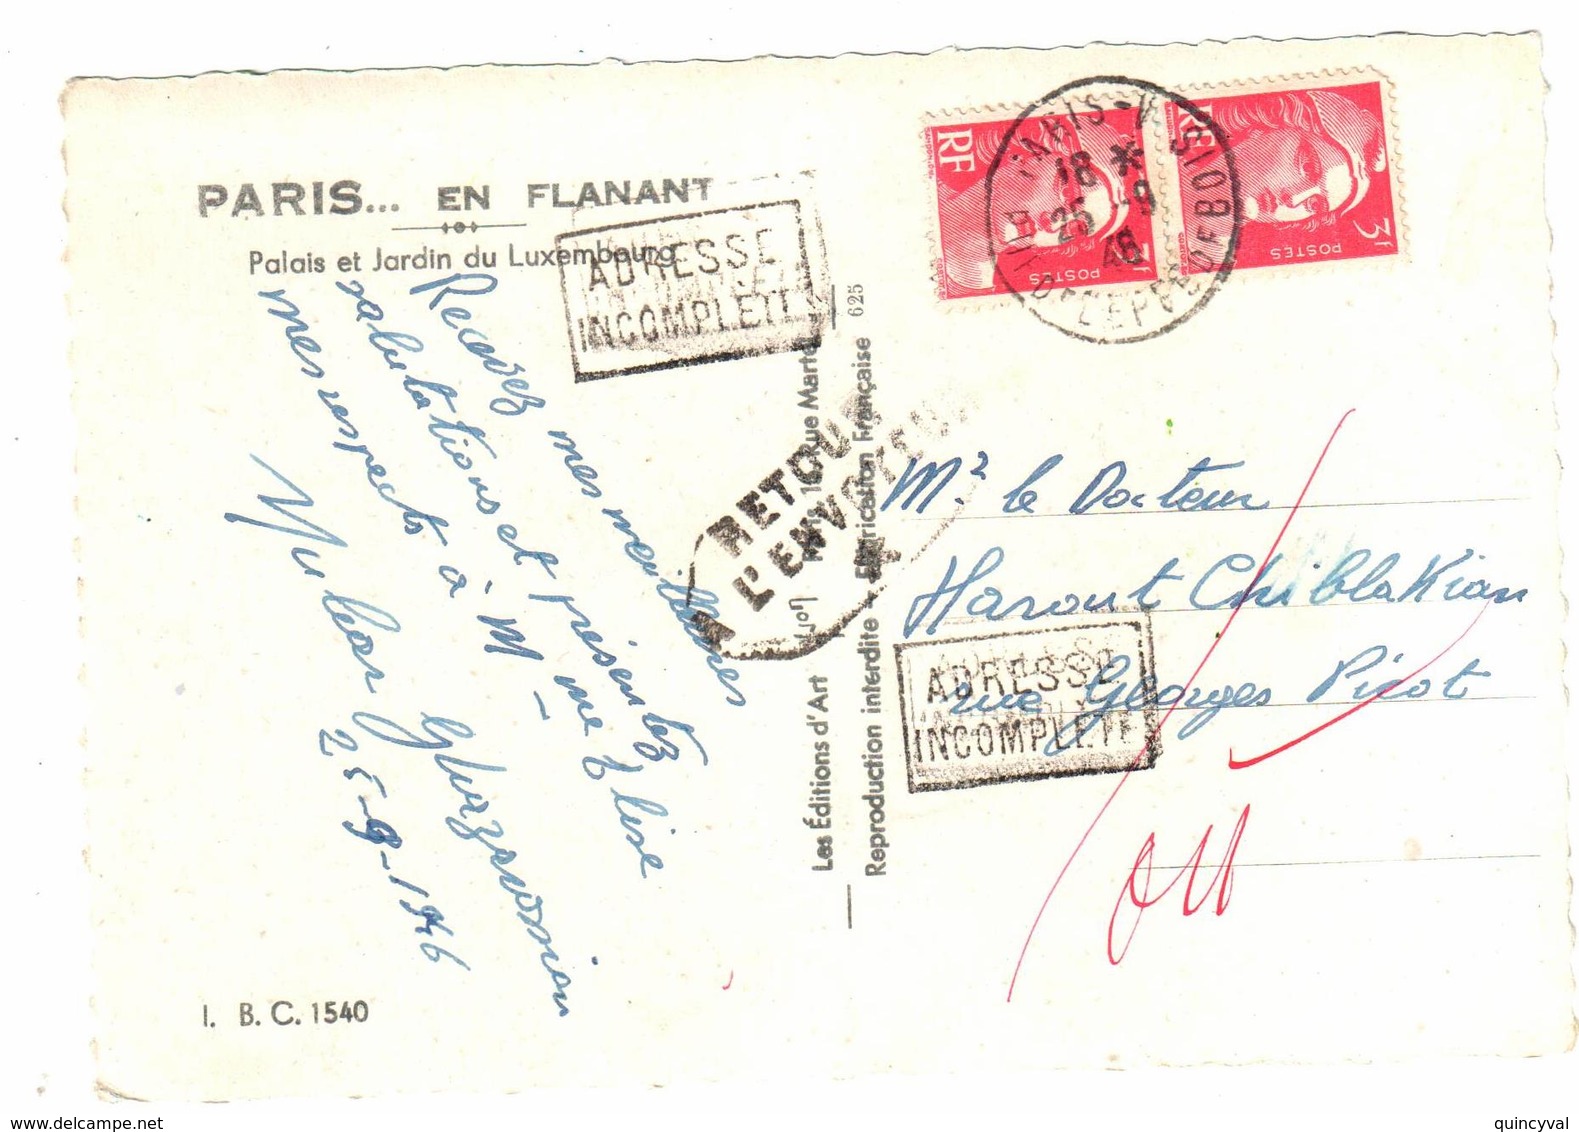 PARIS V Carte Postale Au Tarif Etranger 3 F Gandon Yv 716 Retour à L'envoyeur Adresse Incomplète Ob 1946 - Covers & Documents